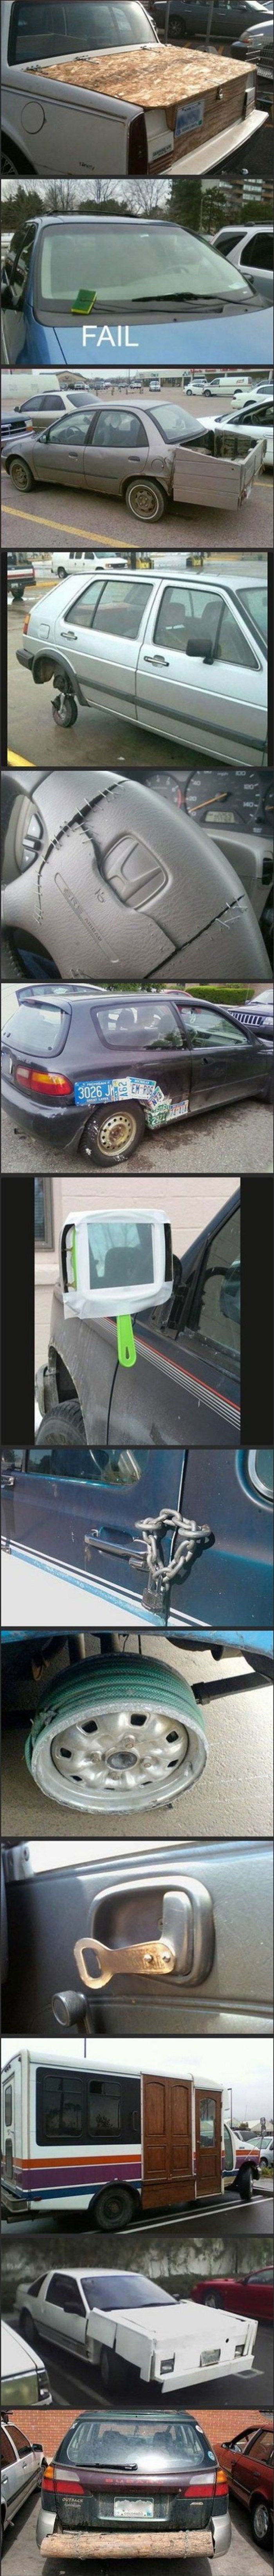 Ovi su ljudi pronašli vrlo čudne načine za popravljanje svojih vozila